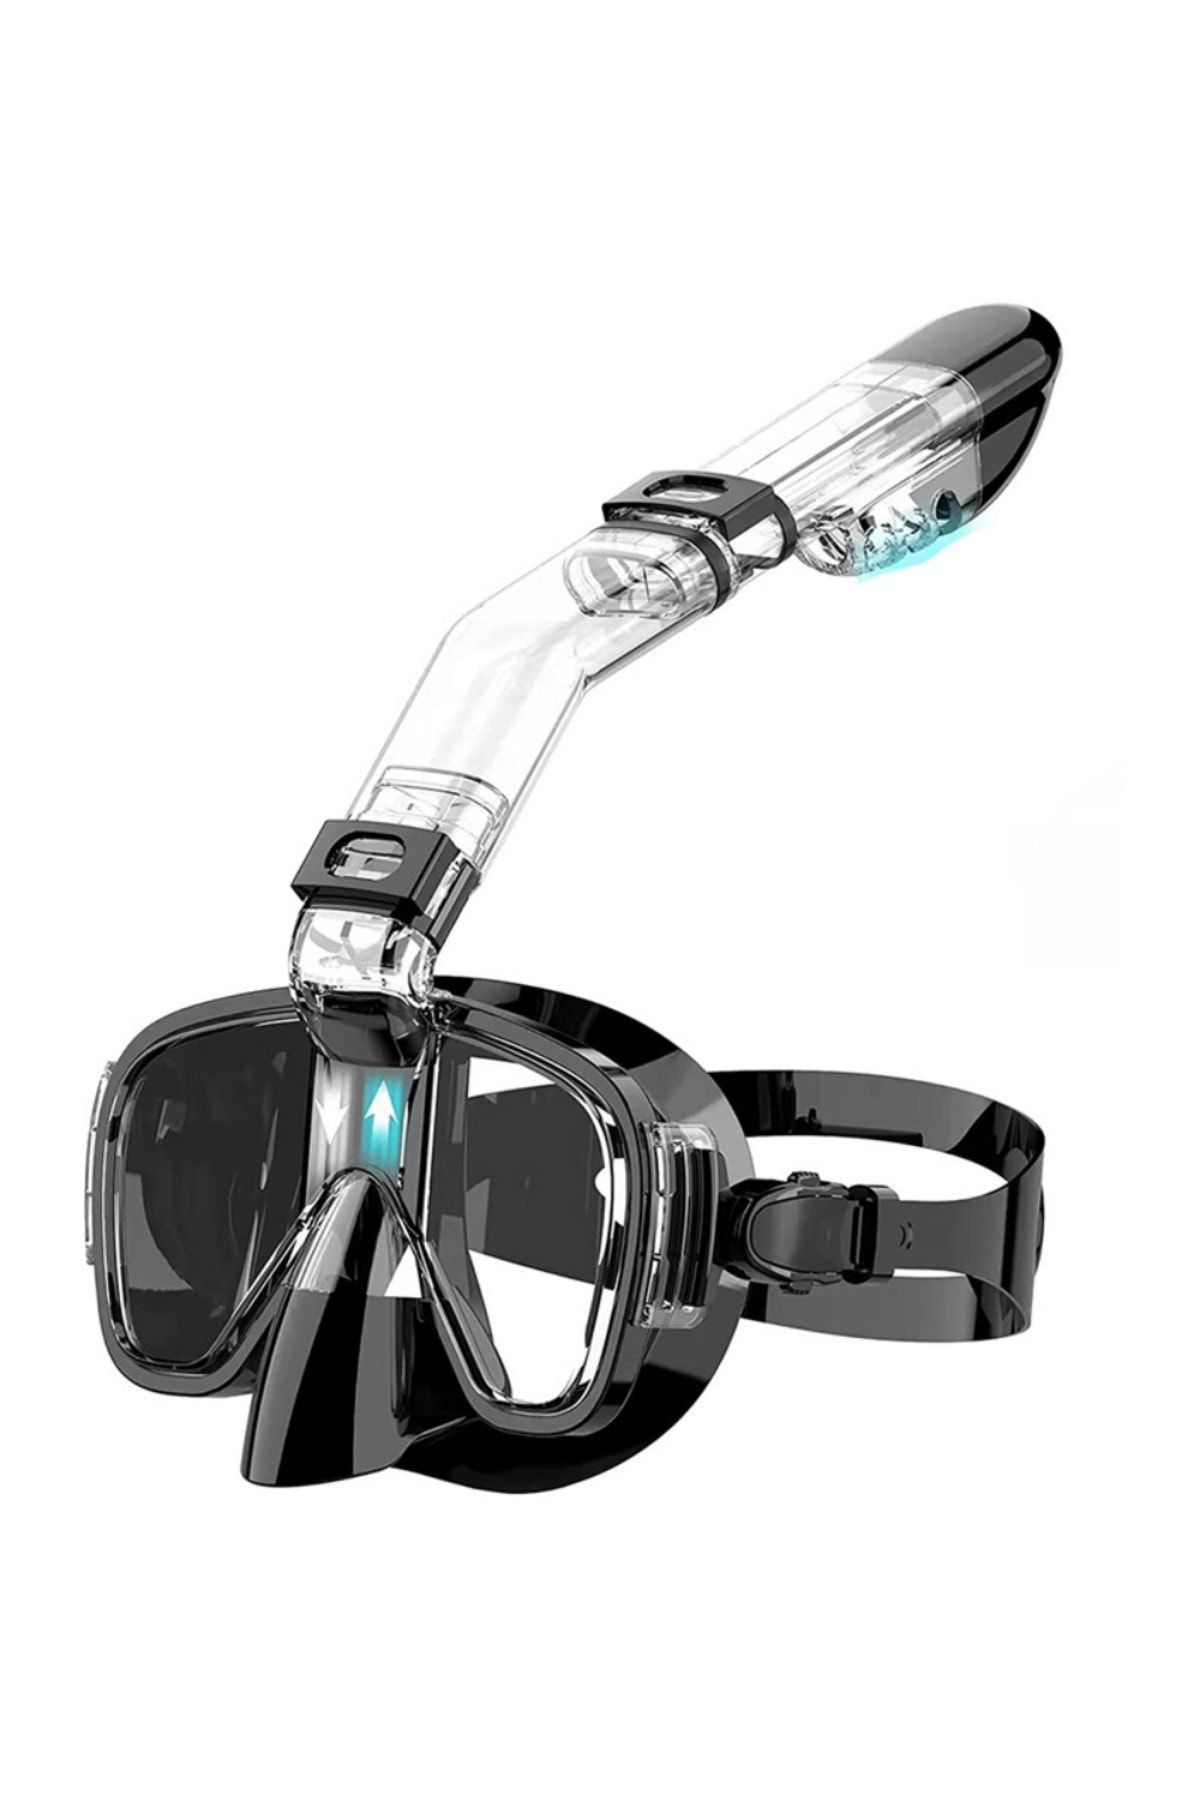 YENİTECH YeniTech-Şnorkel,katlanabilir profesyonel dalış maskesi,kuru üst sistem ve siyah kamera tutuculu,